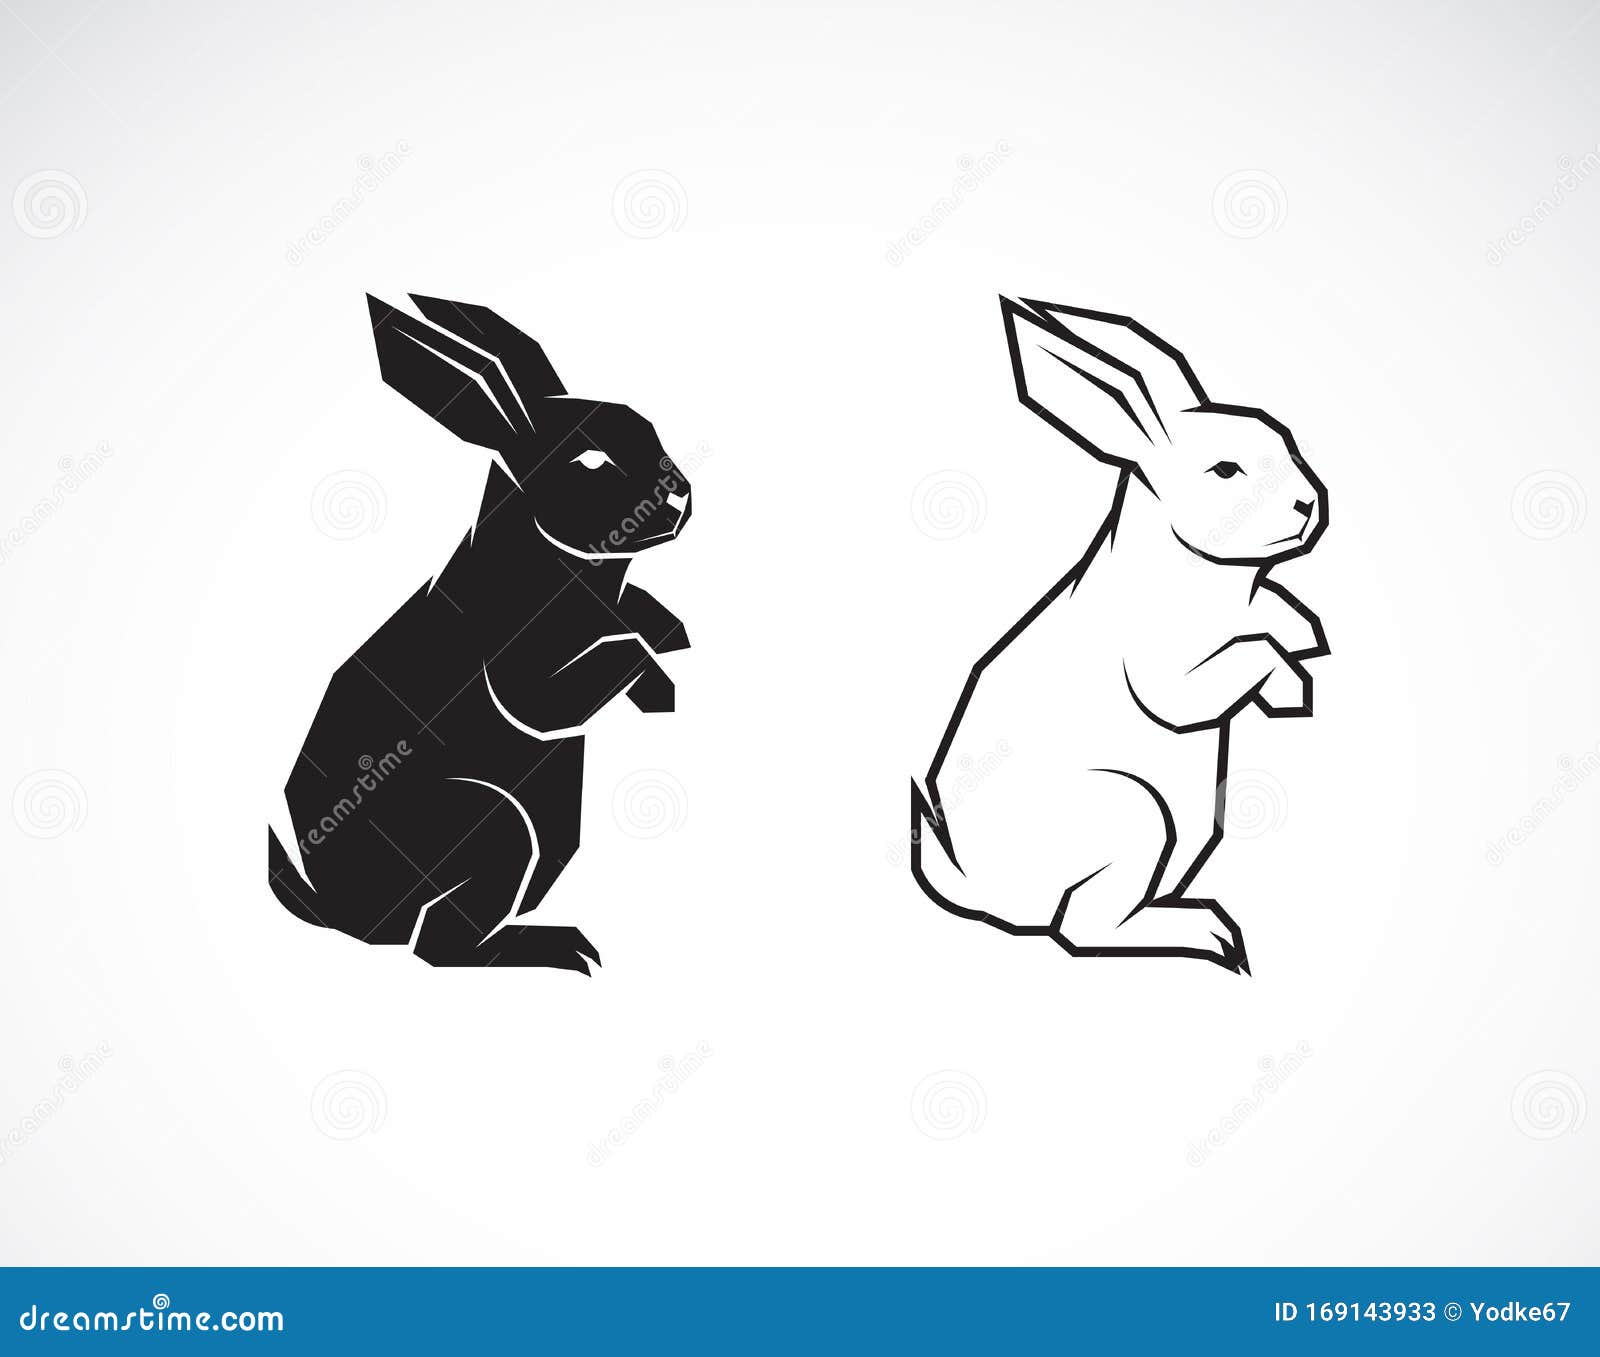 Download Vector Of Rabbit Design On White Background. Wild Animals ...